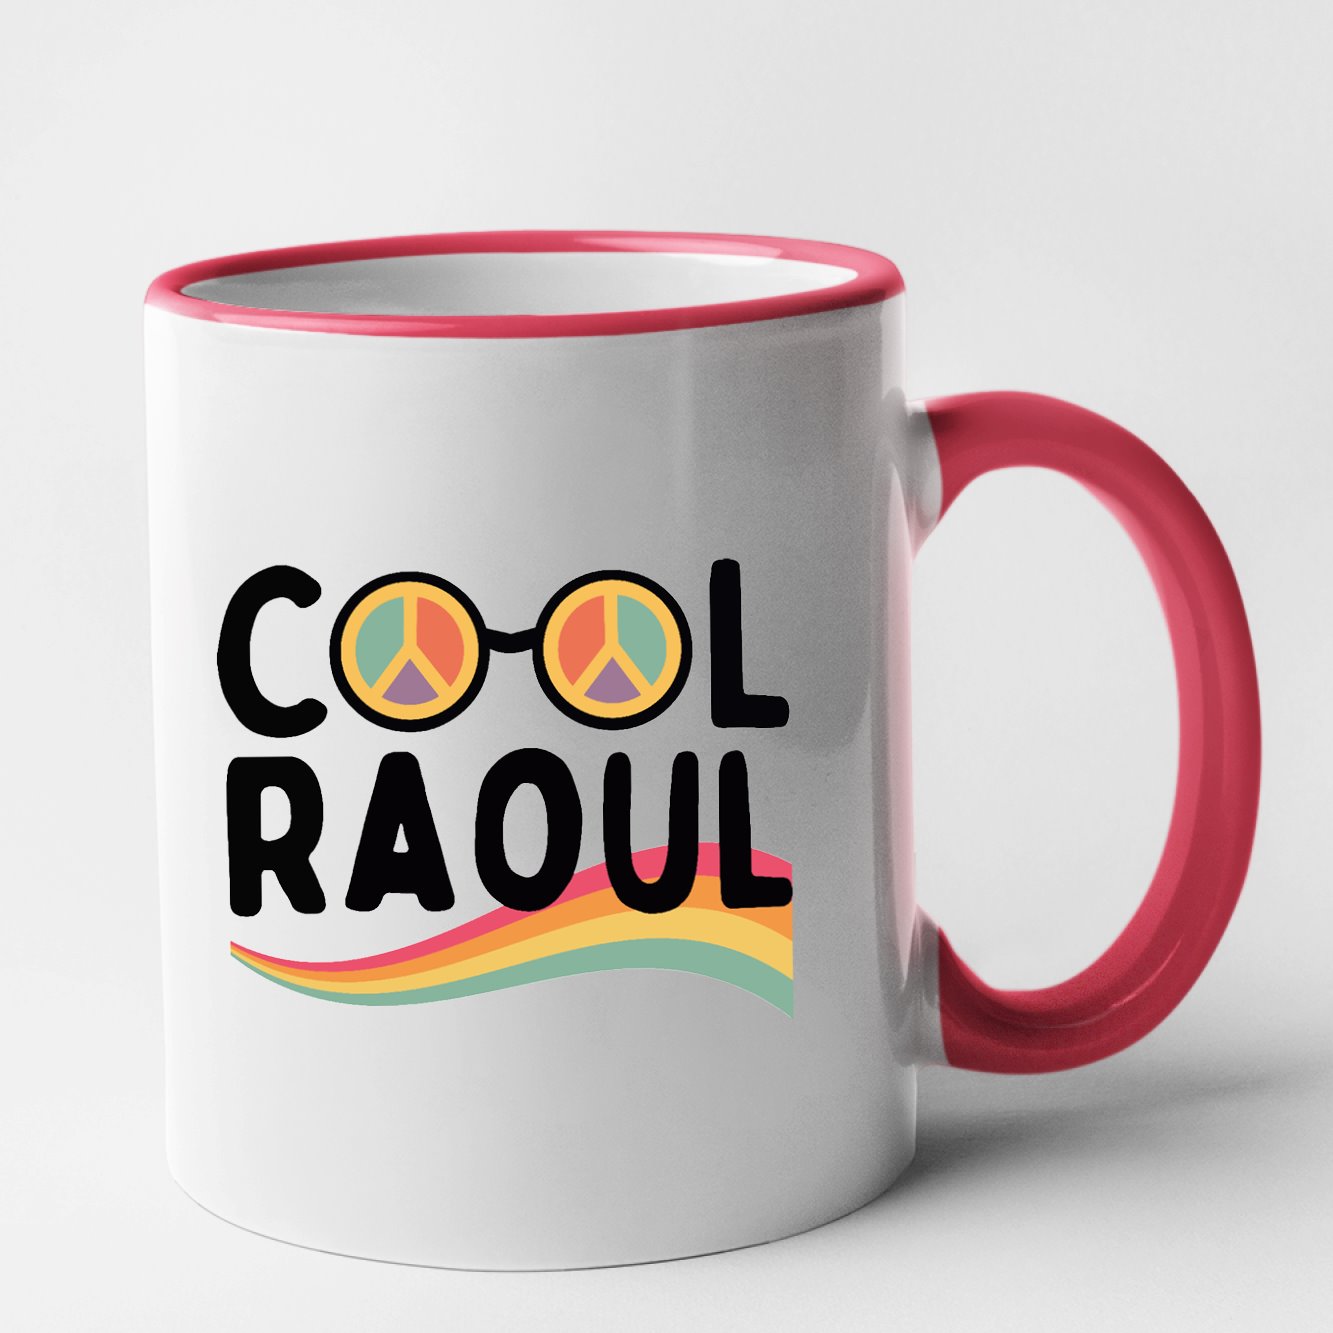 Mug Cool Raoul Rouge